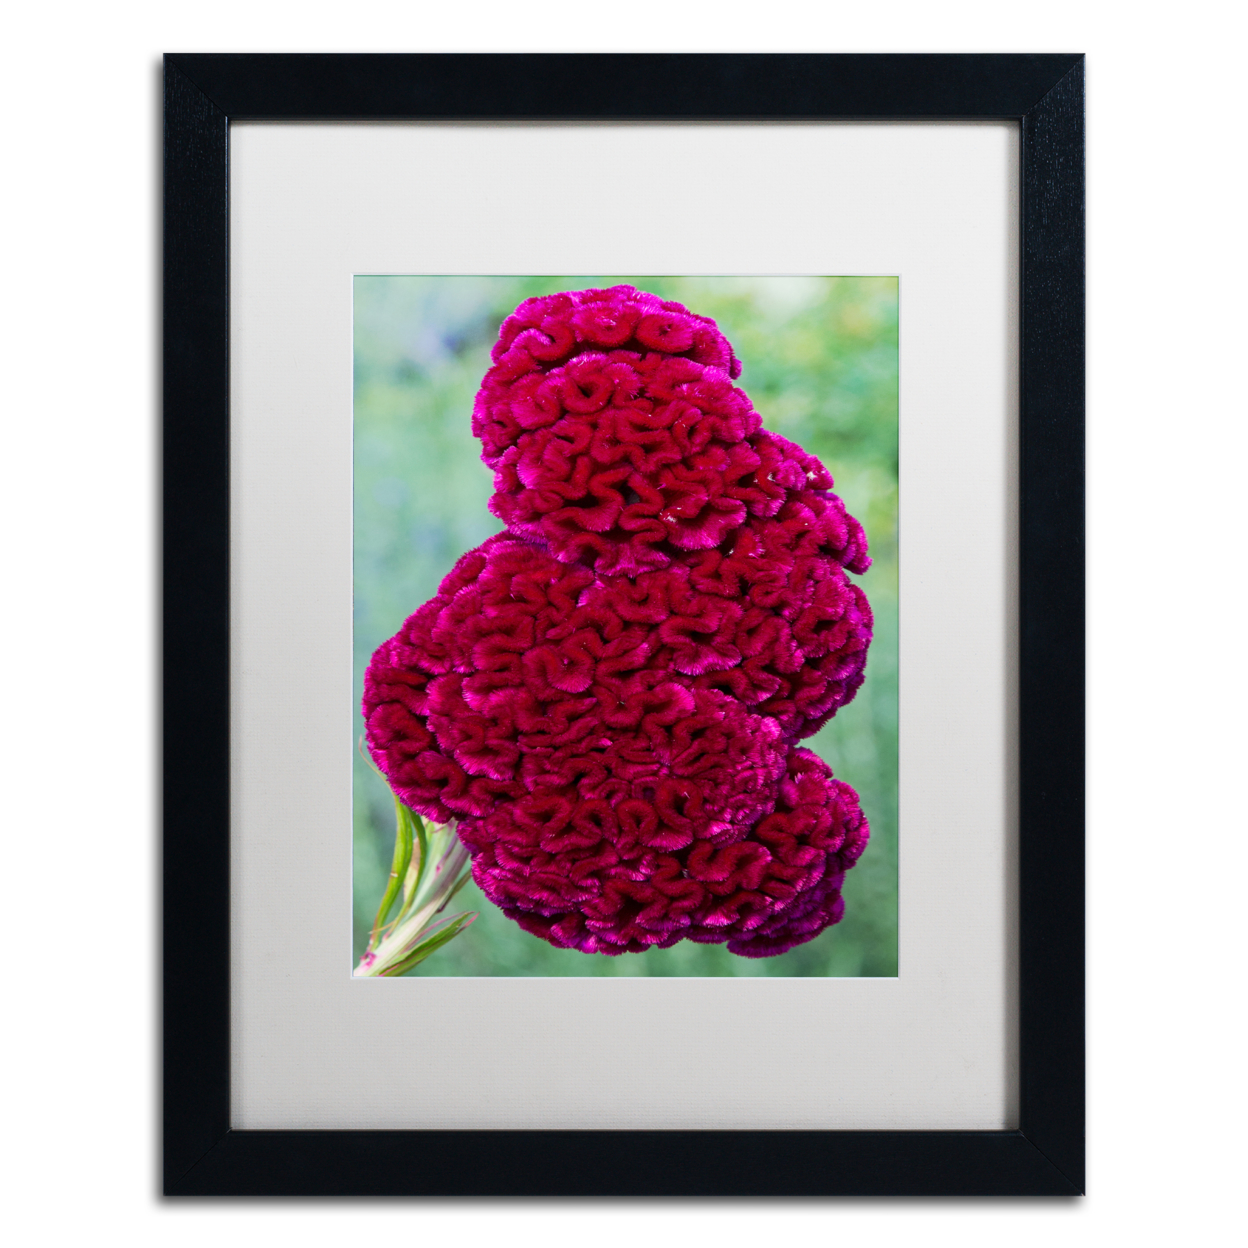 Kurt Shaffer 'Coxcomb Flower' Black Wooden Framed Art 18 X 22 Inches